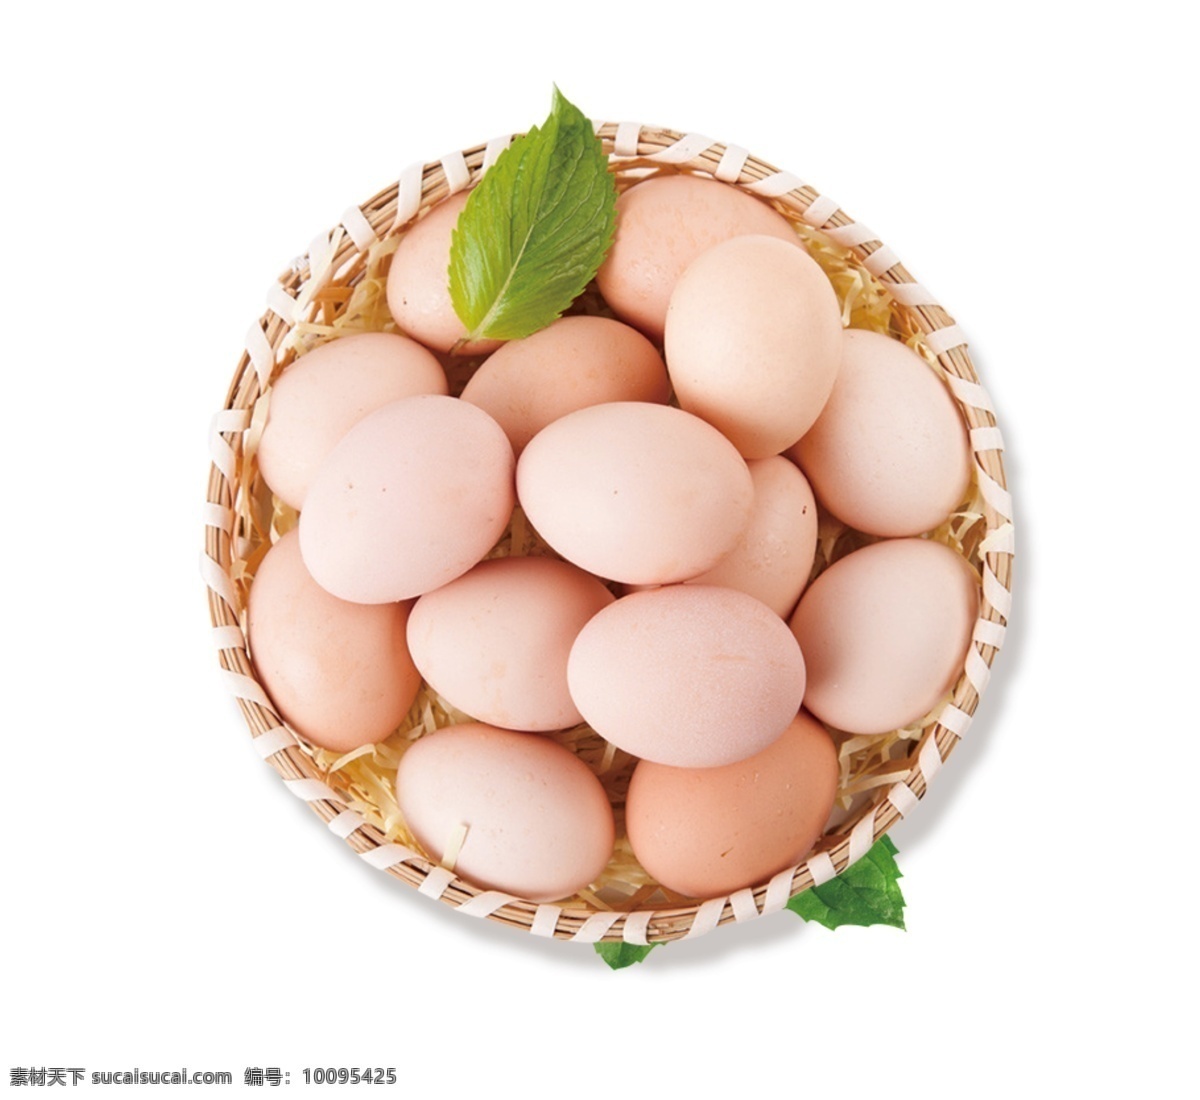 山 鸡蛋 分层 抠 图 鲜鸡蛋 土鸡蛋 山鸡蛋 笨鸡蛋 农家鸡蛋 草鸡蛋 有机鸡蛋 绿色食品 农家鸡 俯视俯拍 广告摄影 食品摄影 白底抠图 高清鸡蛋素材